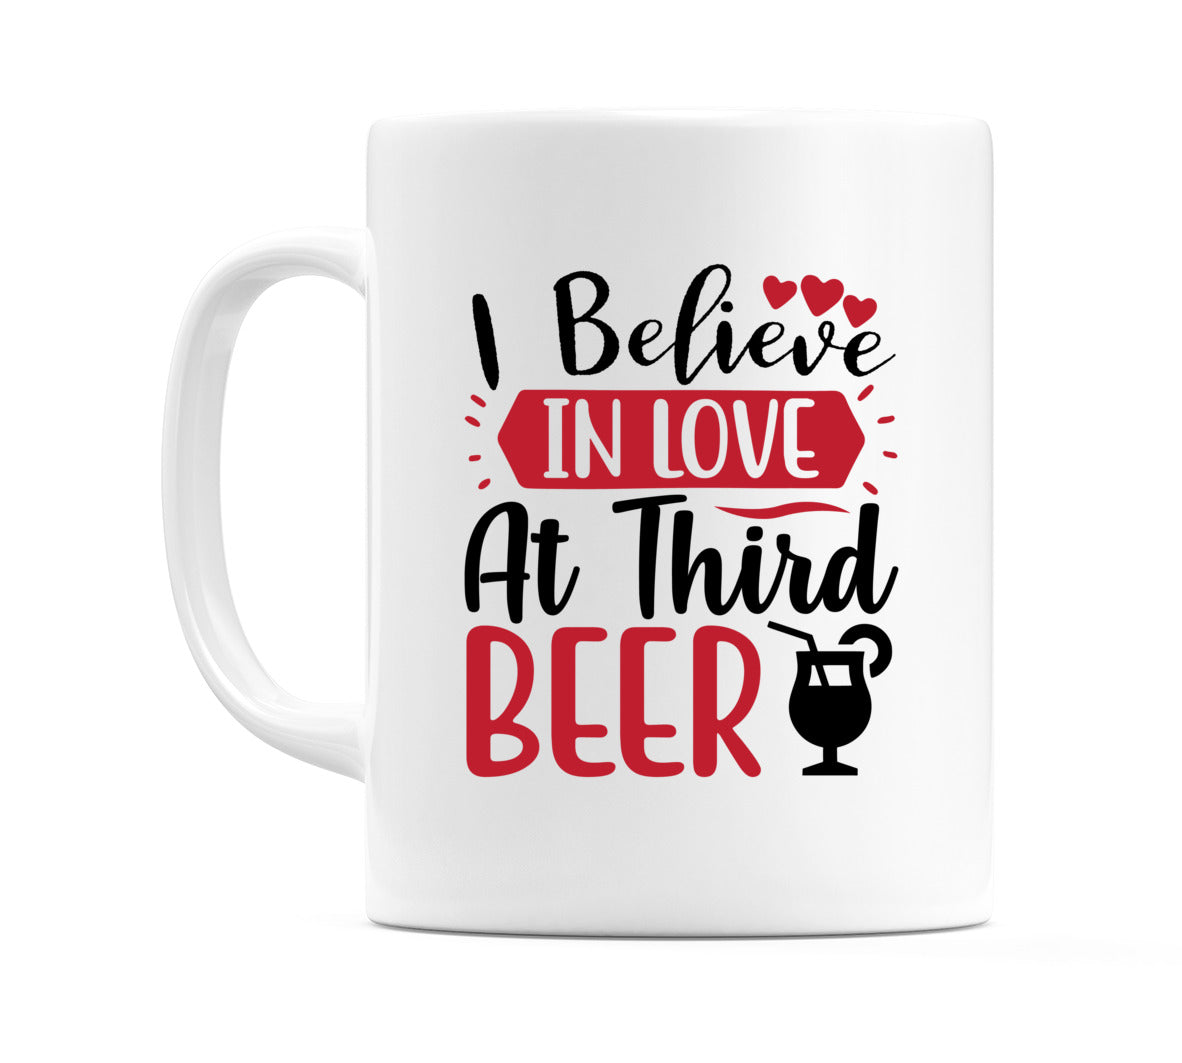 I believe in love at third beer Mug